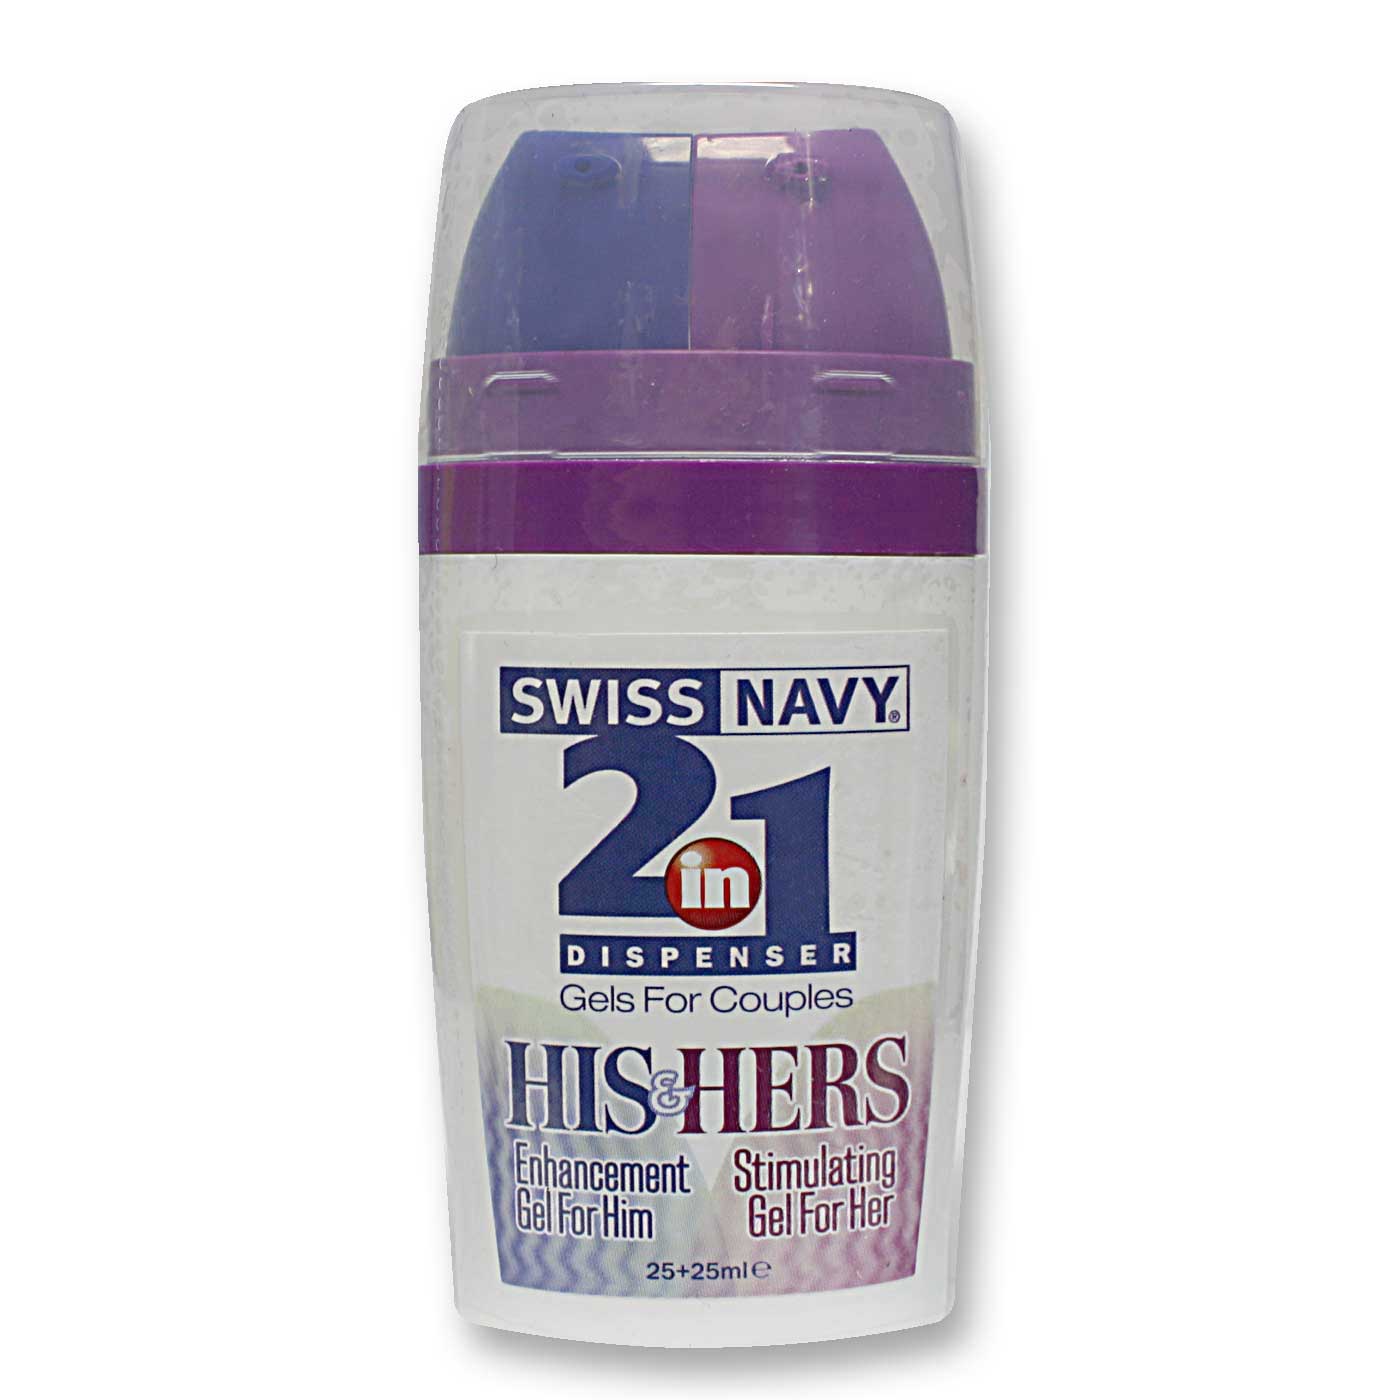  Nhập sỉ Gel Kéo Dài Thời Gian Swiss Navy 2 in 1 giá rẻ